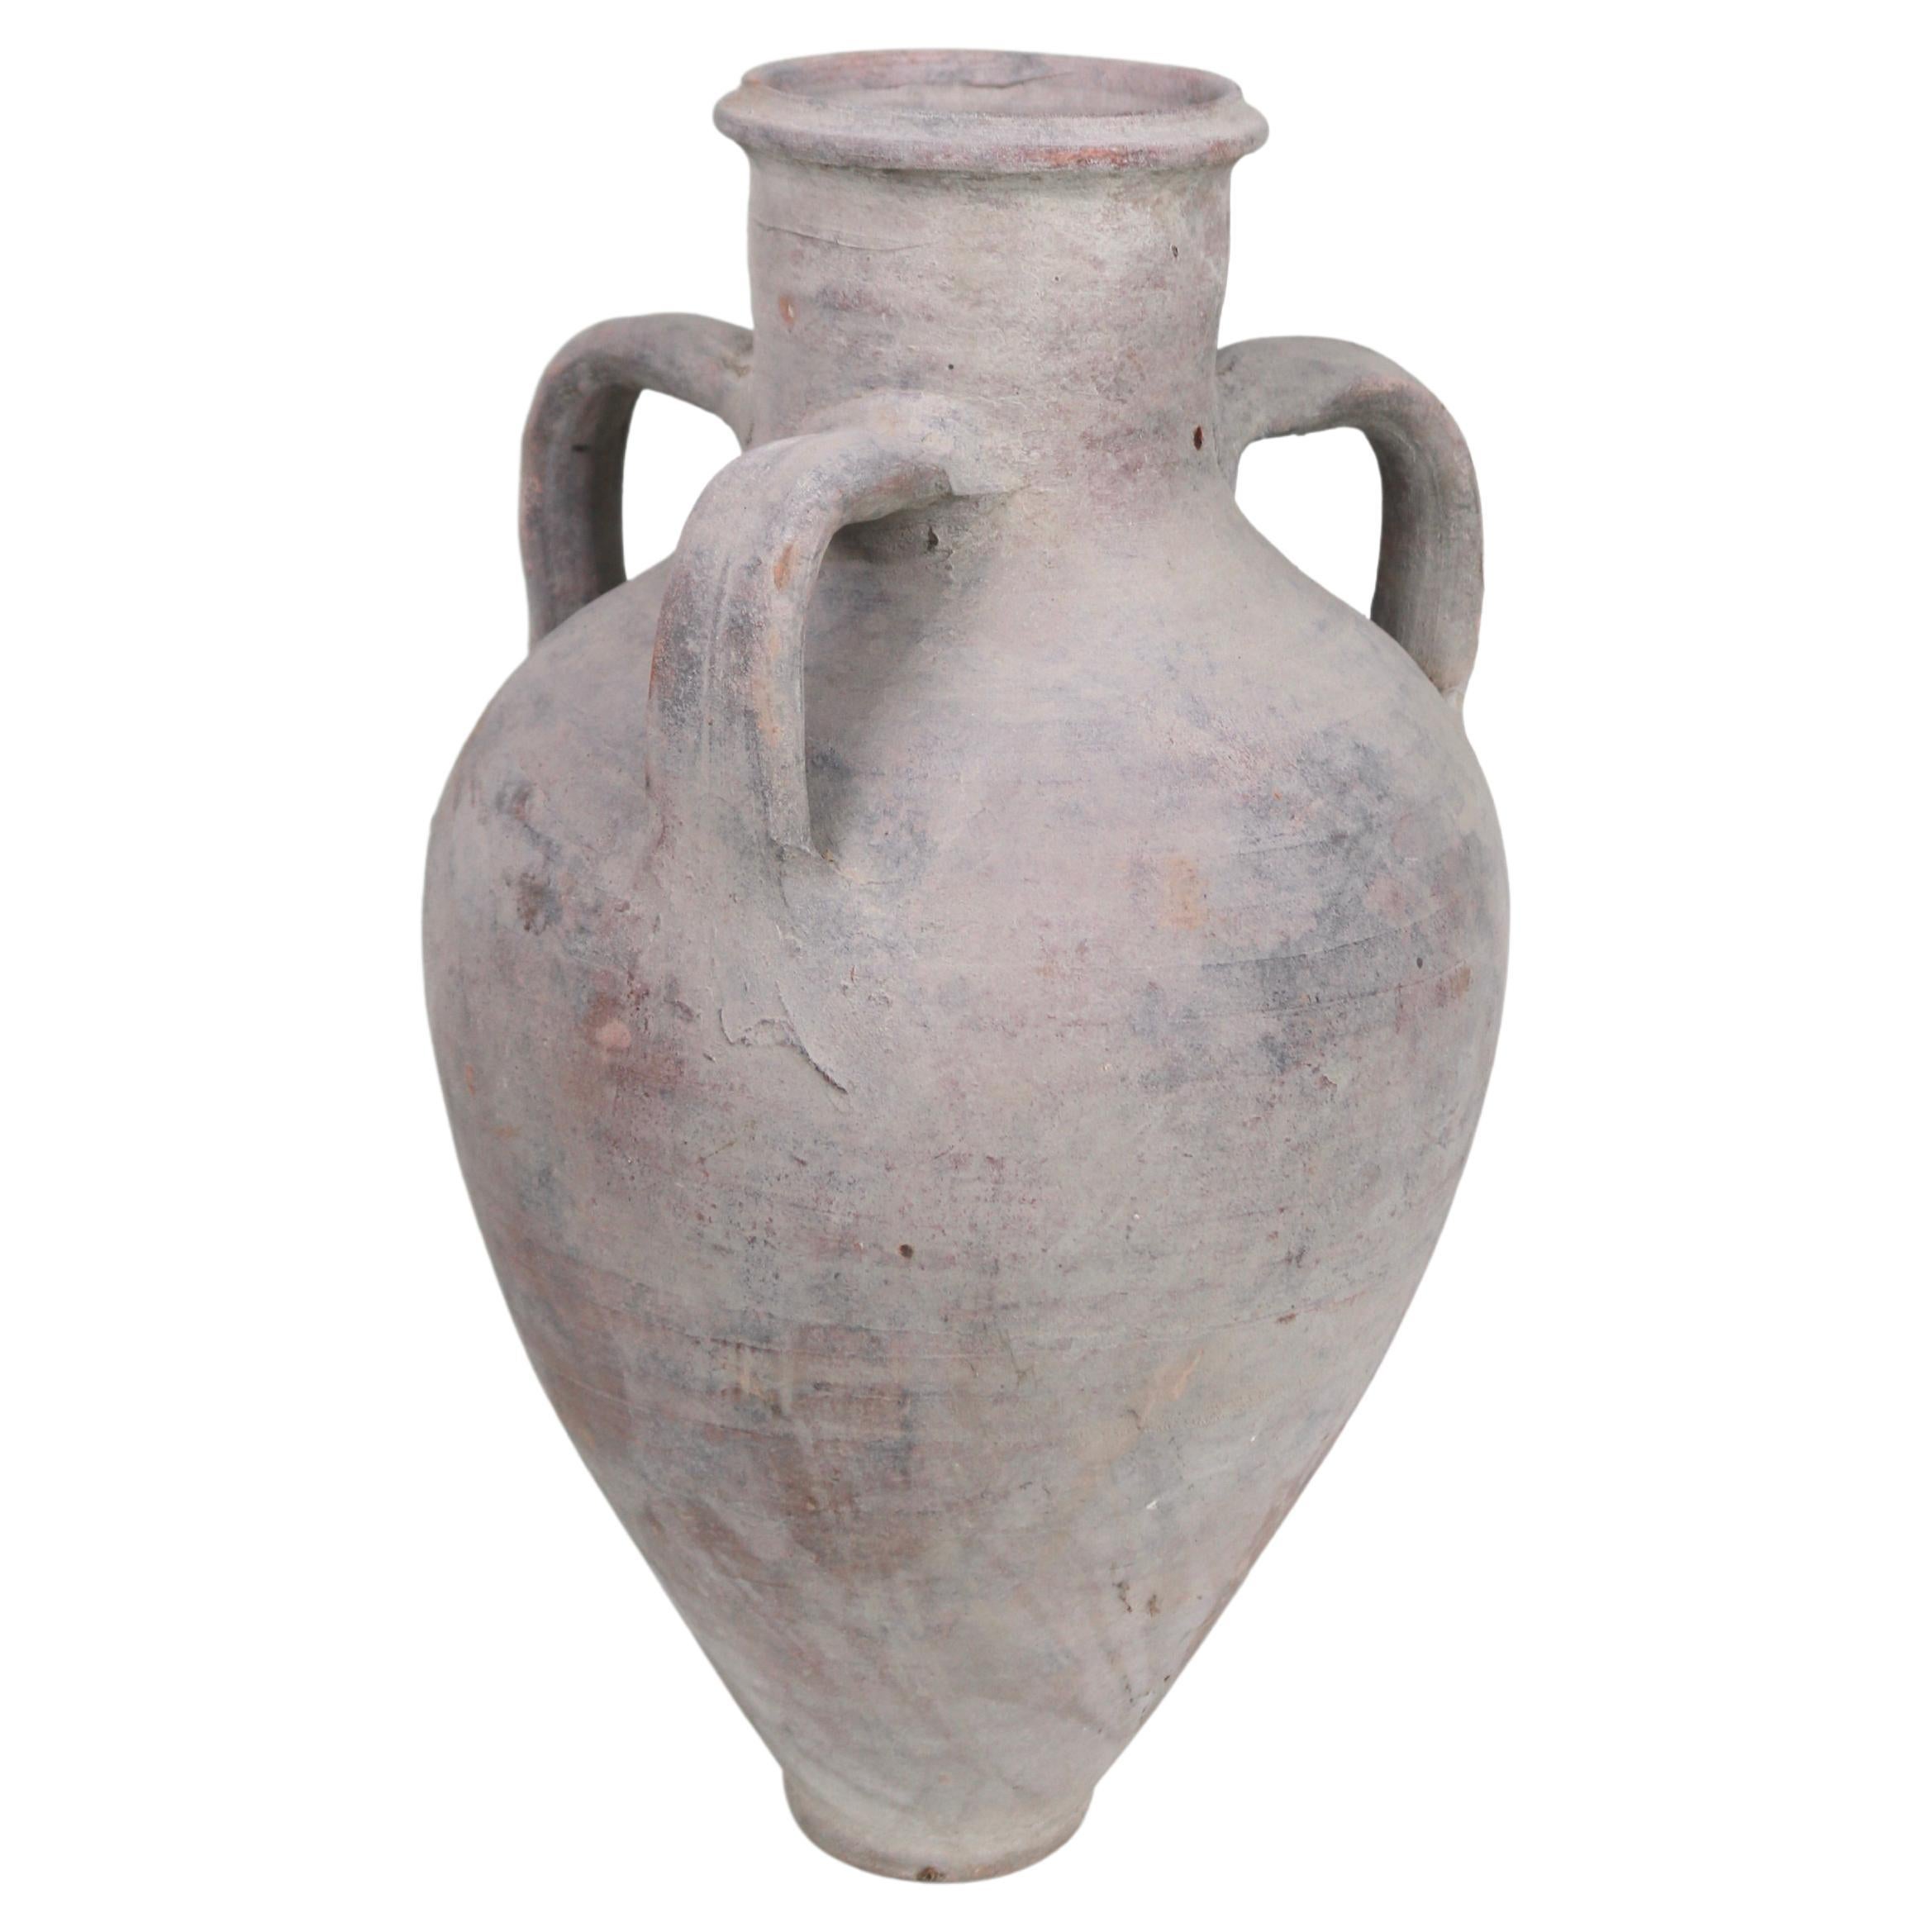 Griechisches Terrakotta-Gefäß mit 3 Armen und einer Amphora